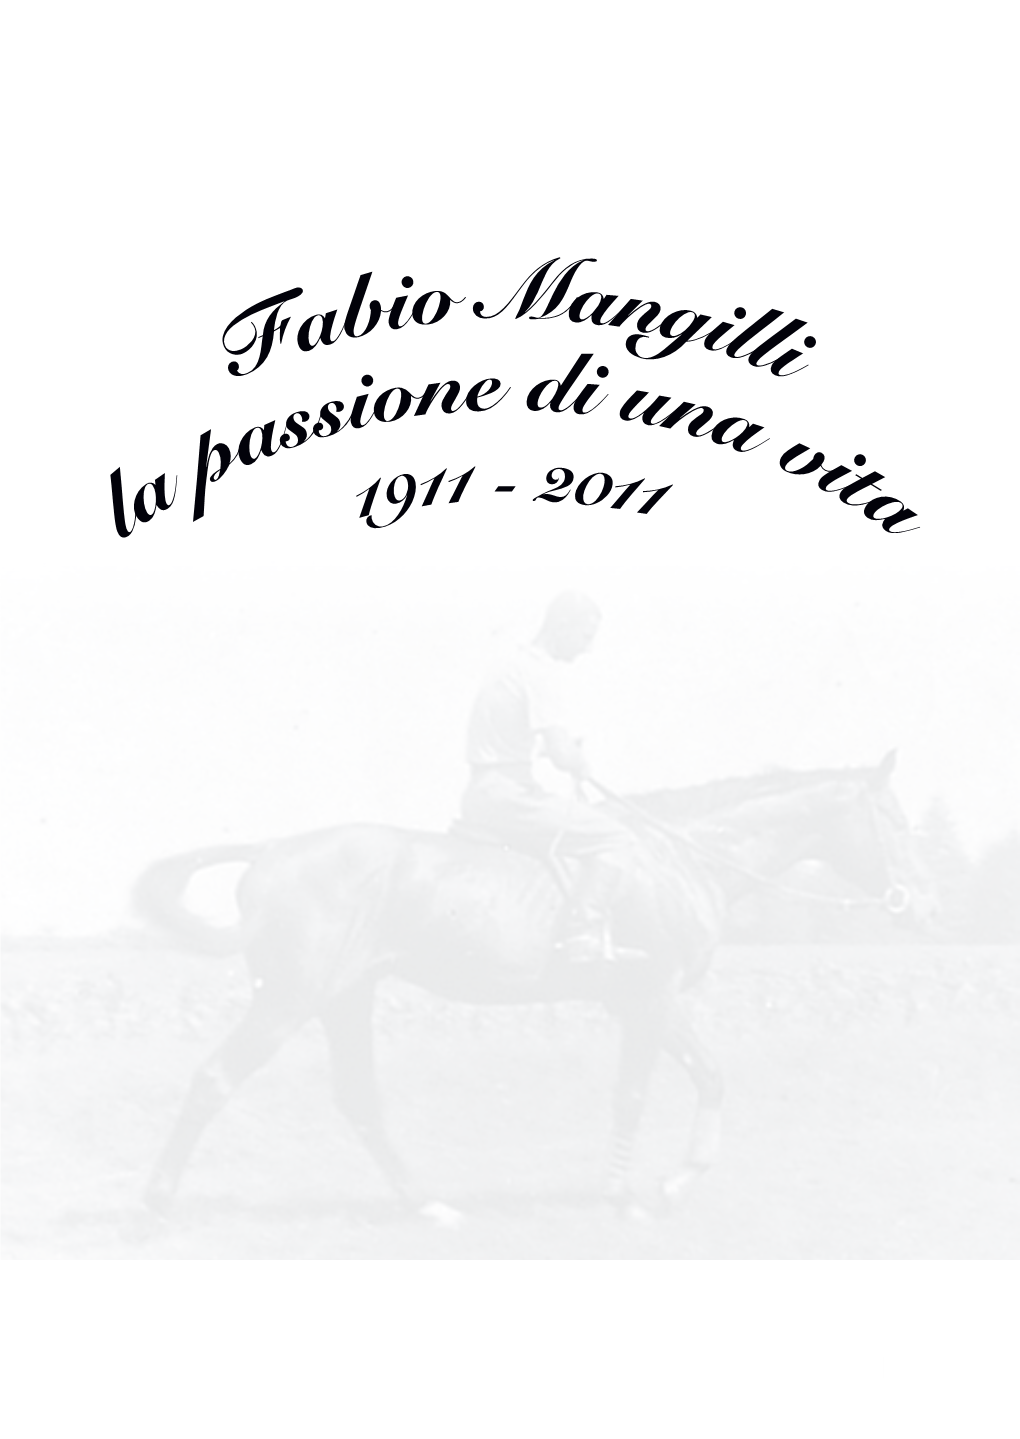 Fabio Mangilli: "La Passione Di Una Vita" 1911-2011